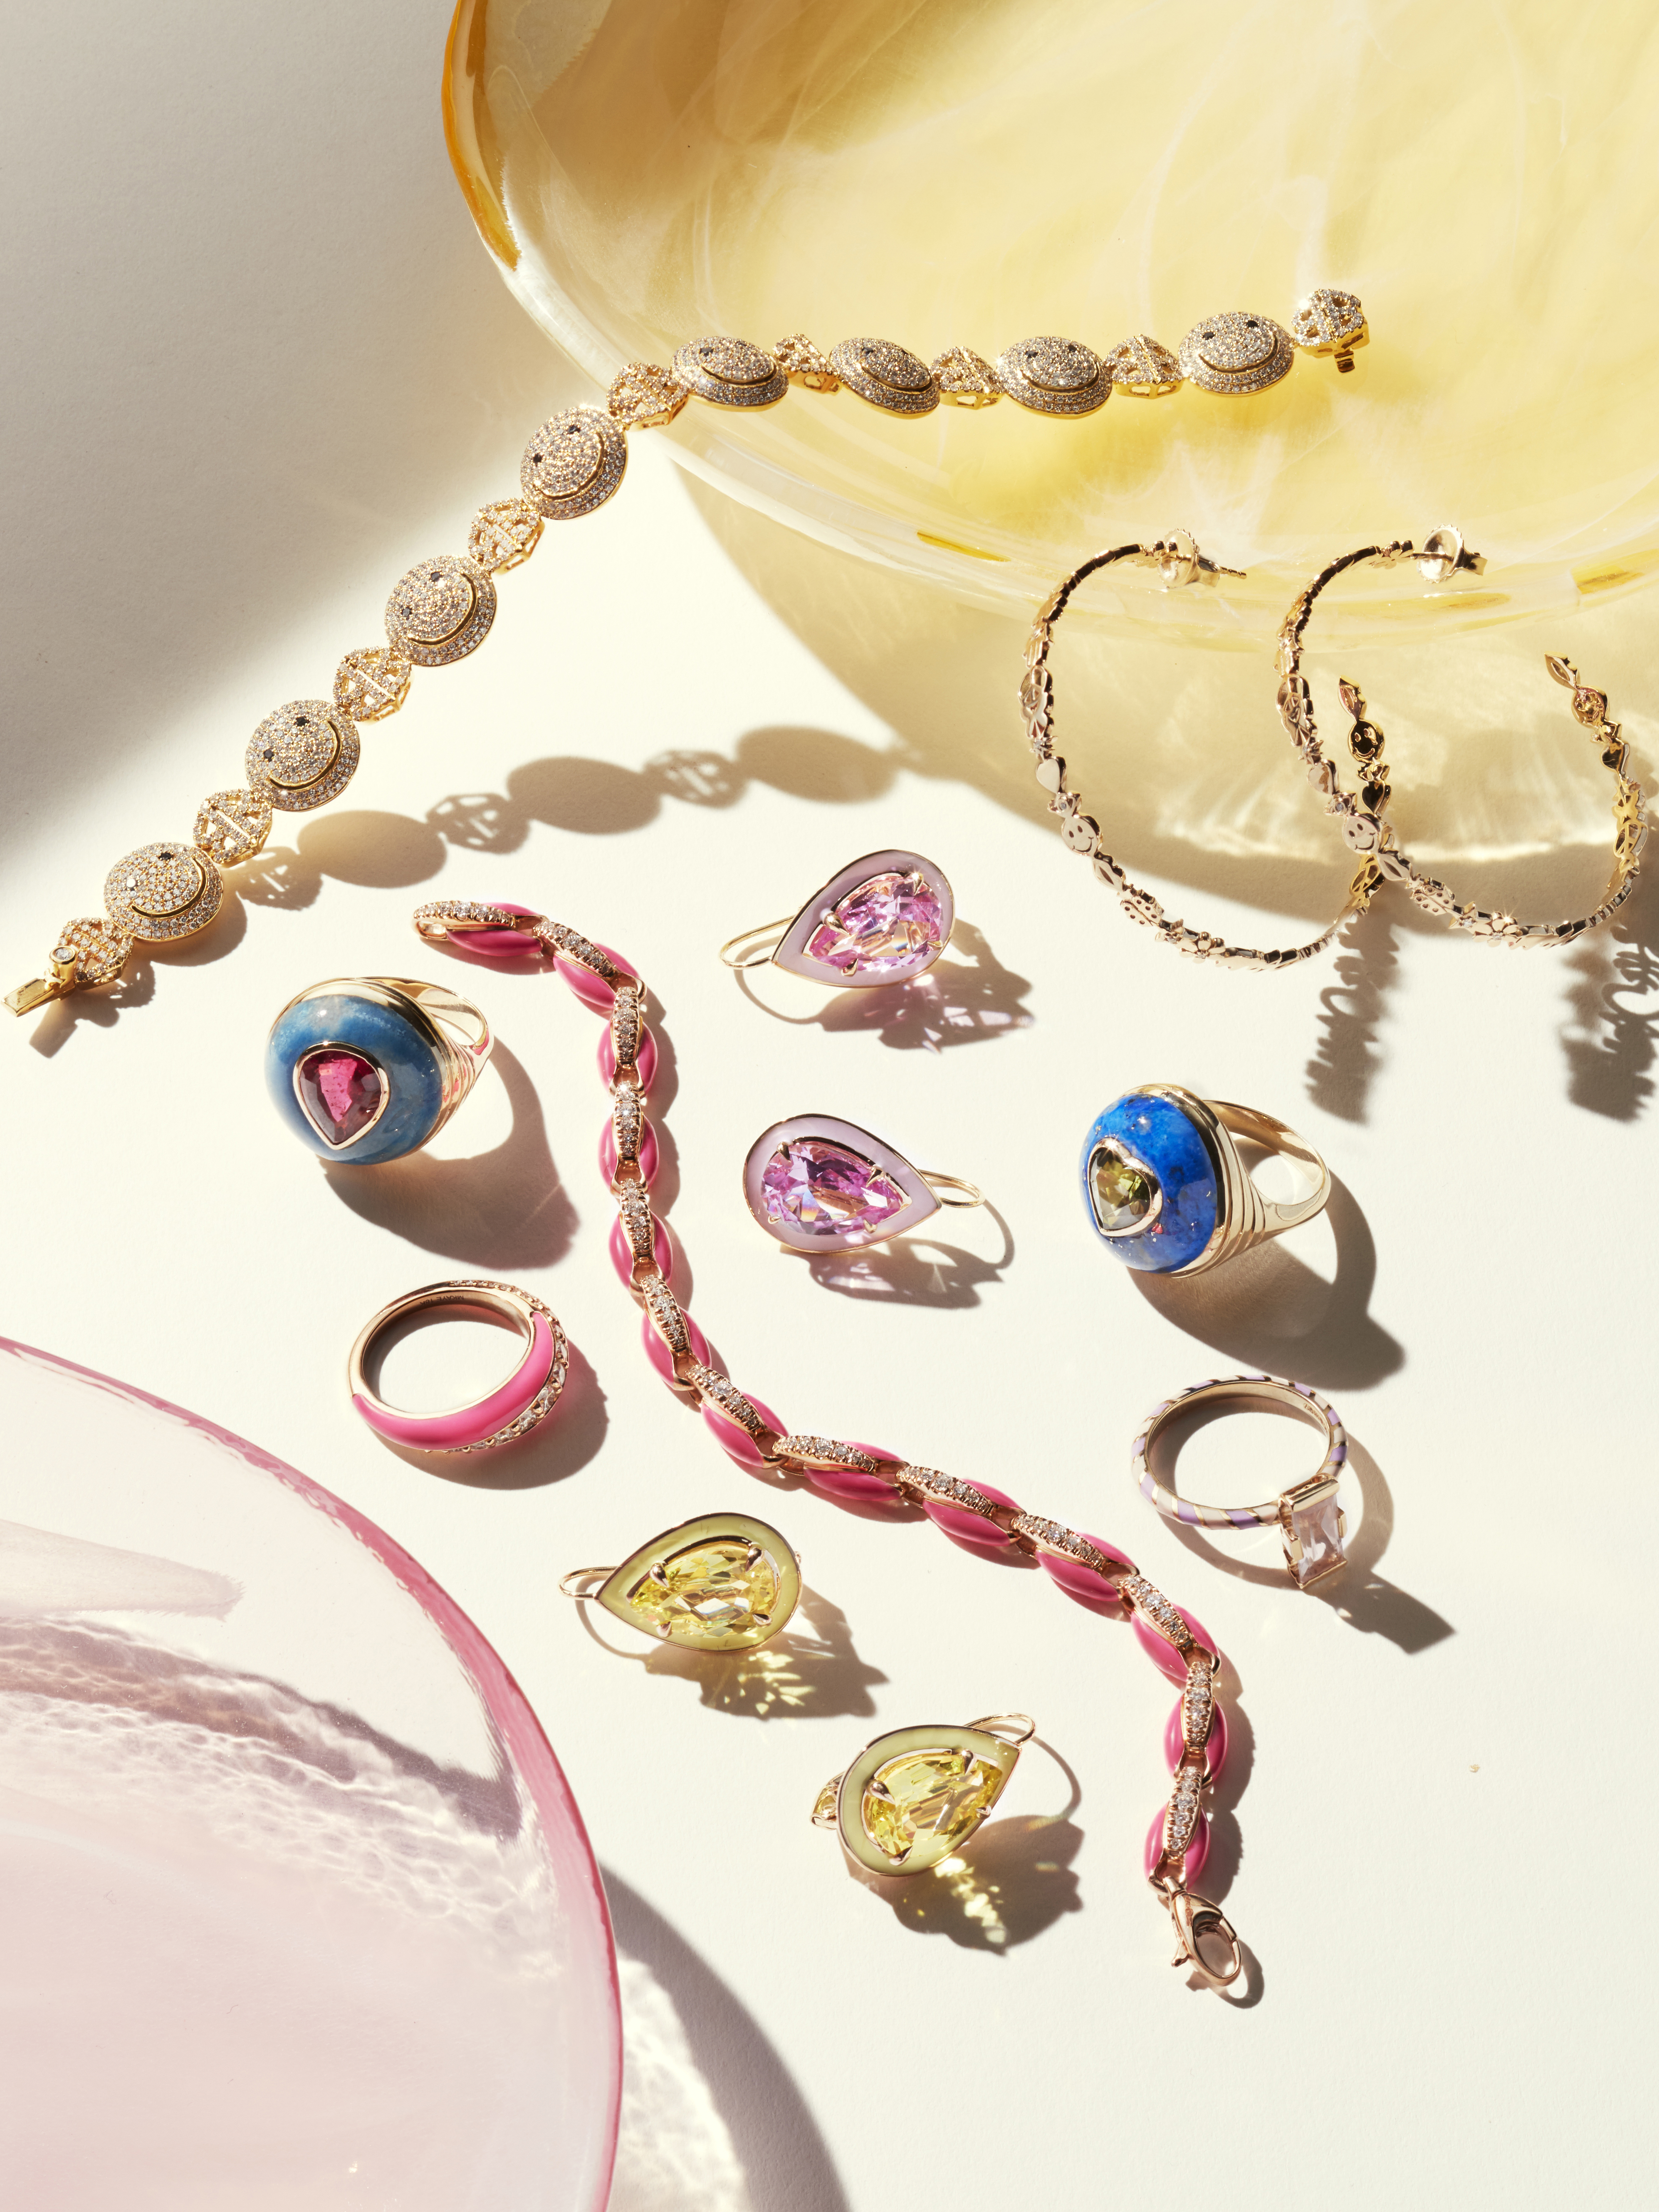 Jewelry To Spark Joy 2021: How To Evoke Joy With Your Jewelry